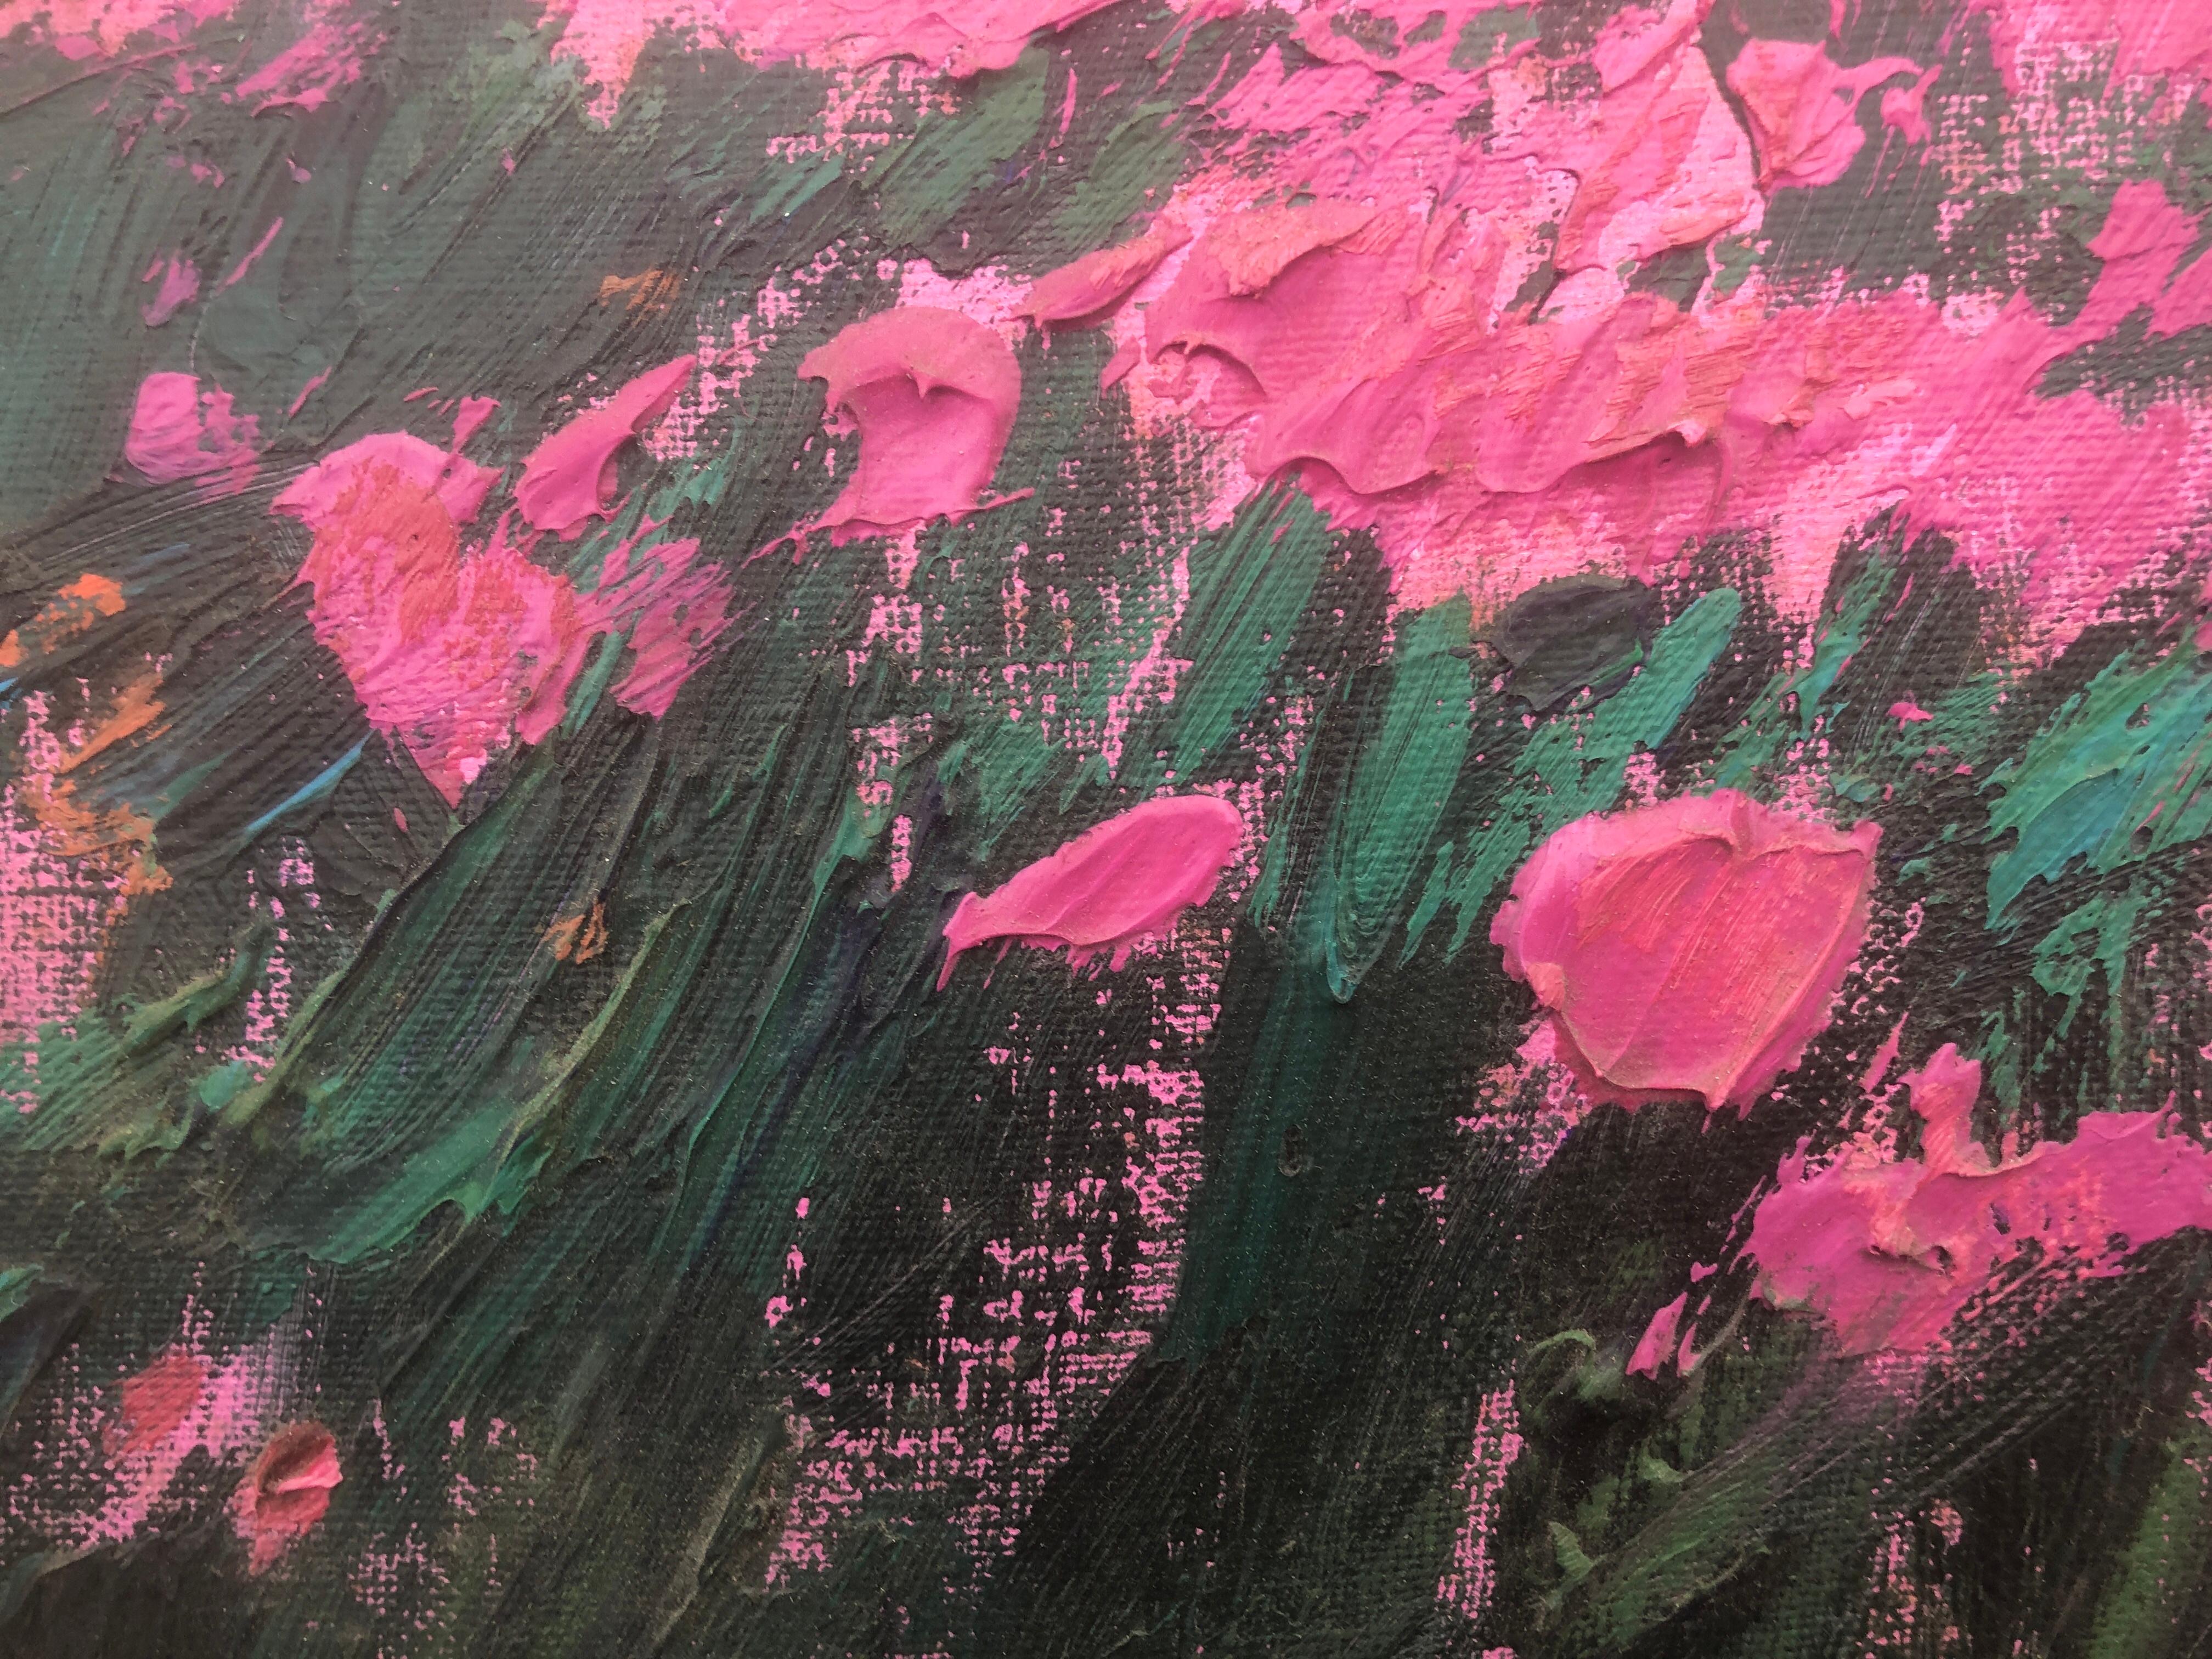 Field of flowers huile sur toile peinture de paysage écossais - Post-impressionnisme Painting par Ramon Vila